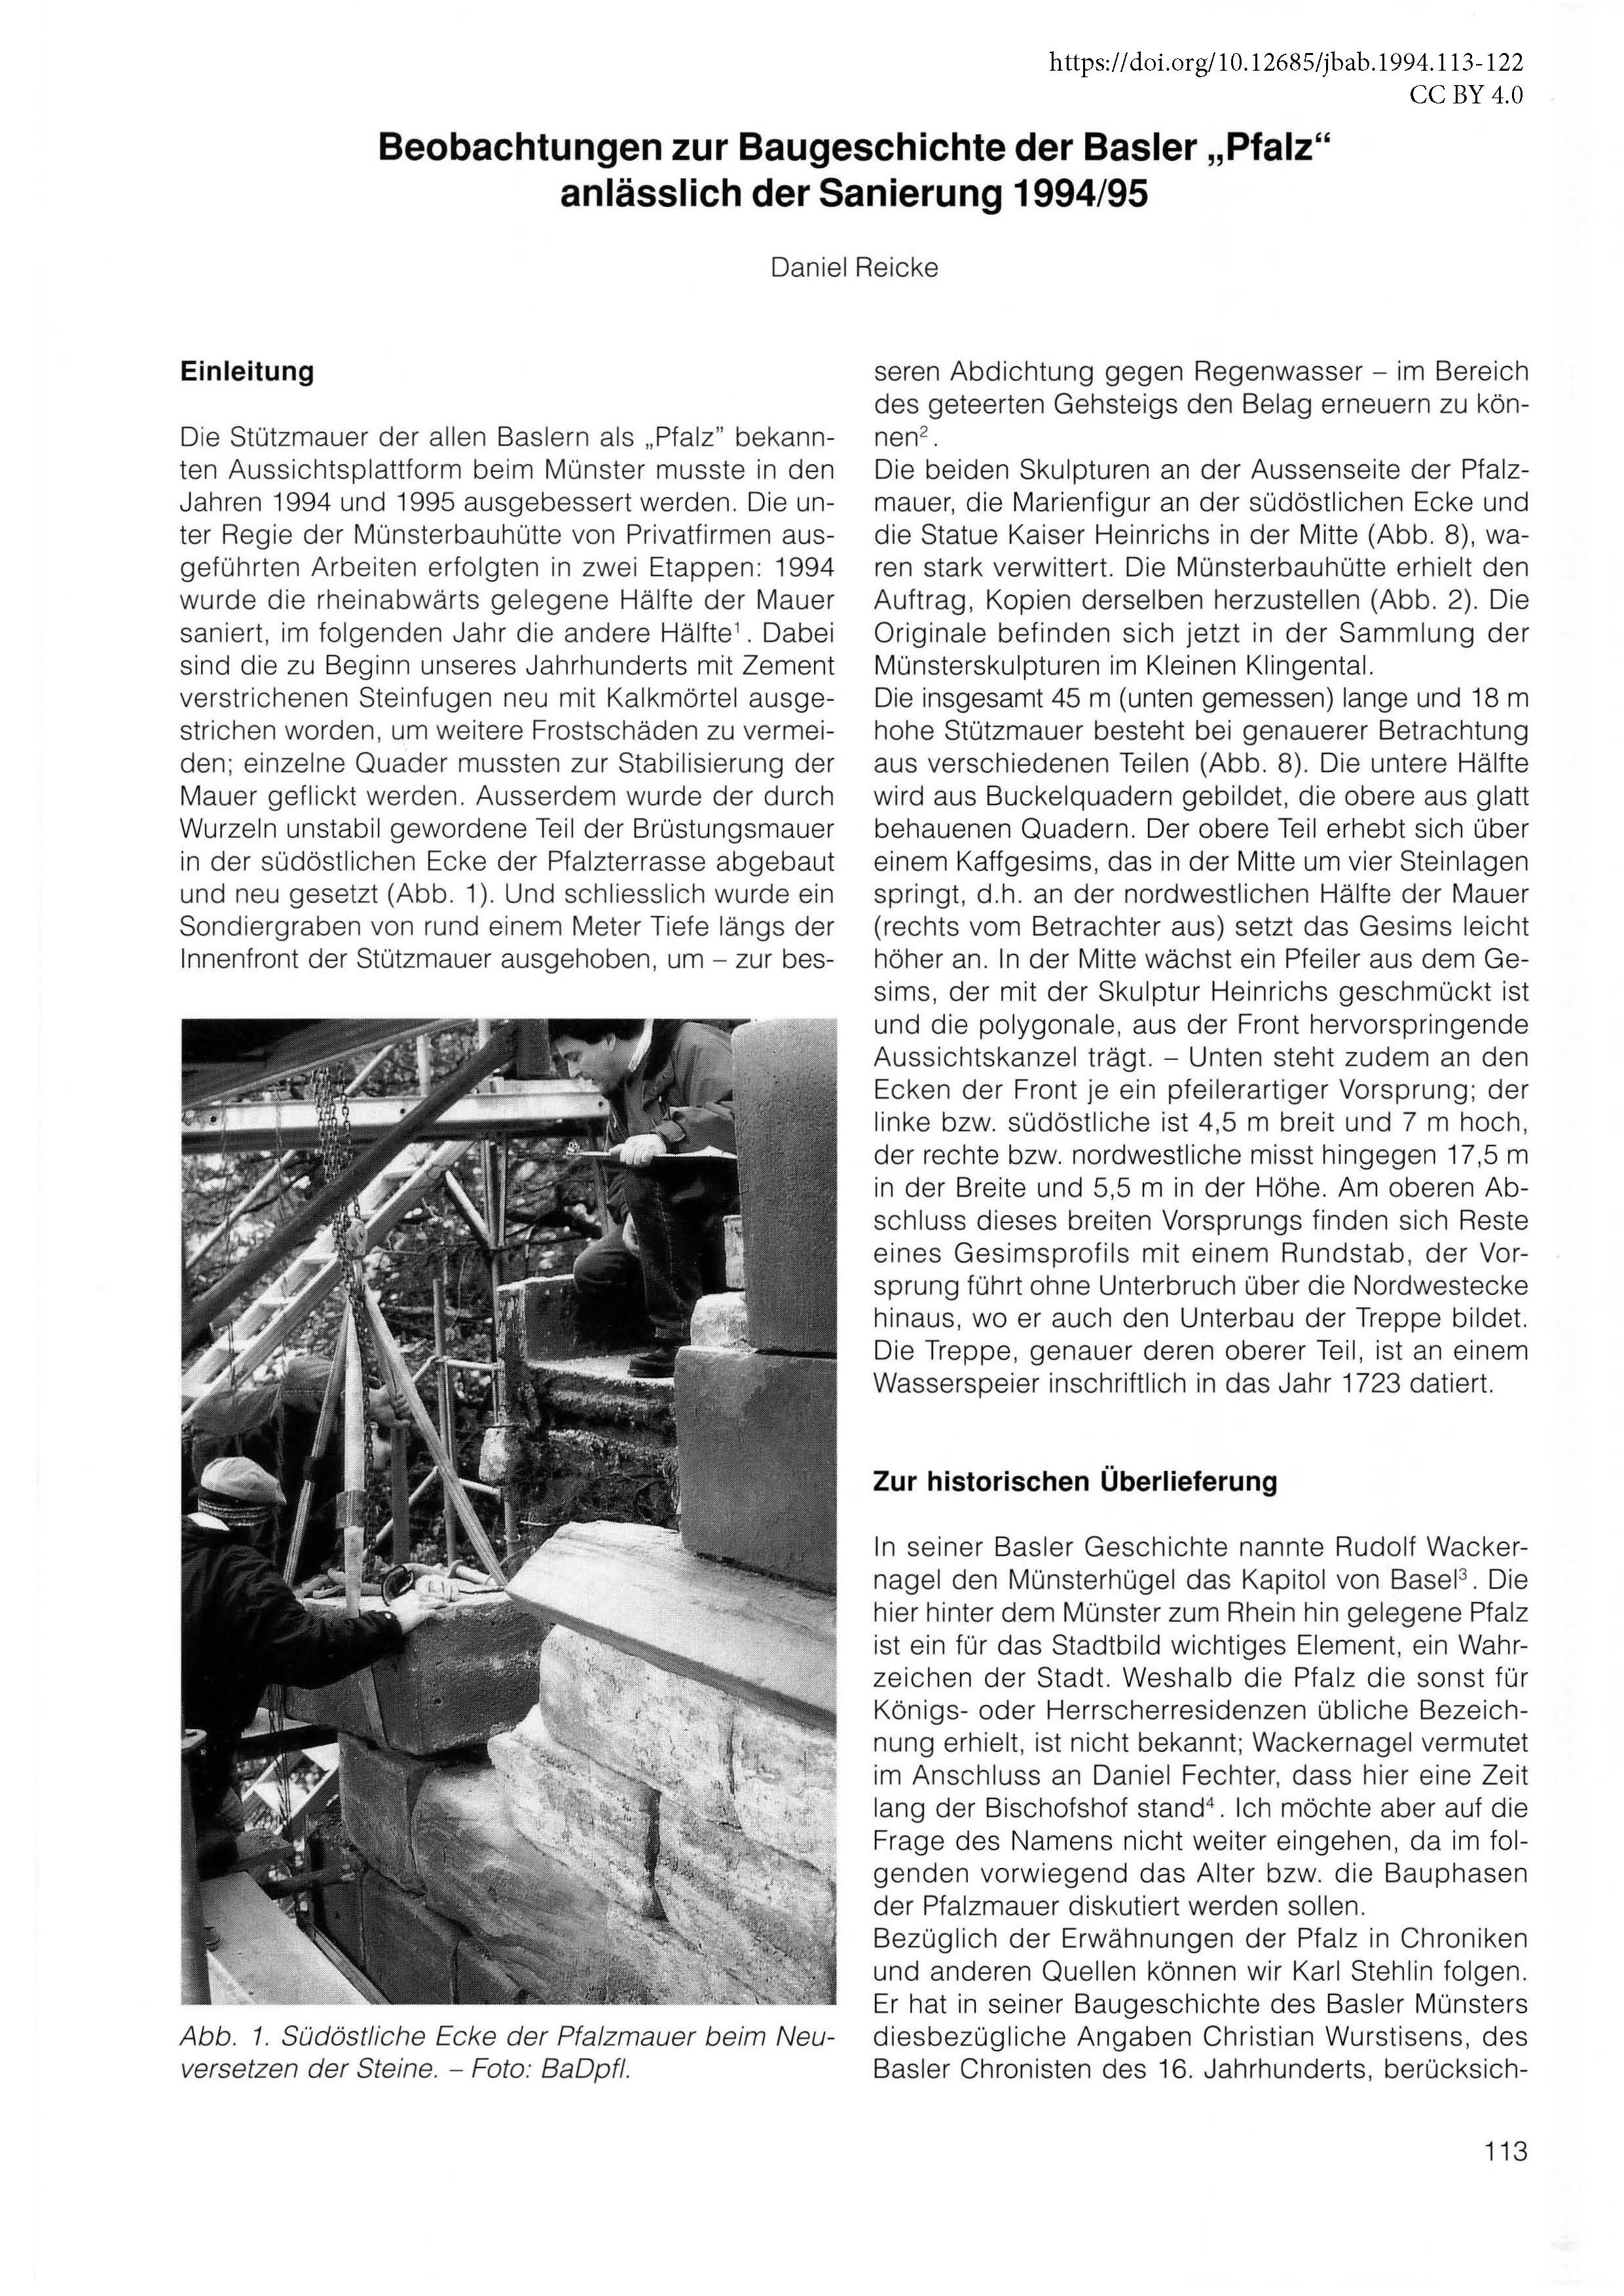 Erste Seite des Artikels zur Baugeschichte der Basler Pfalz